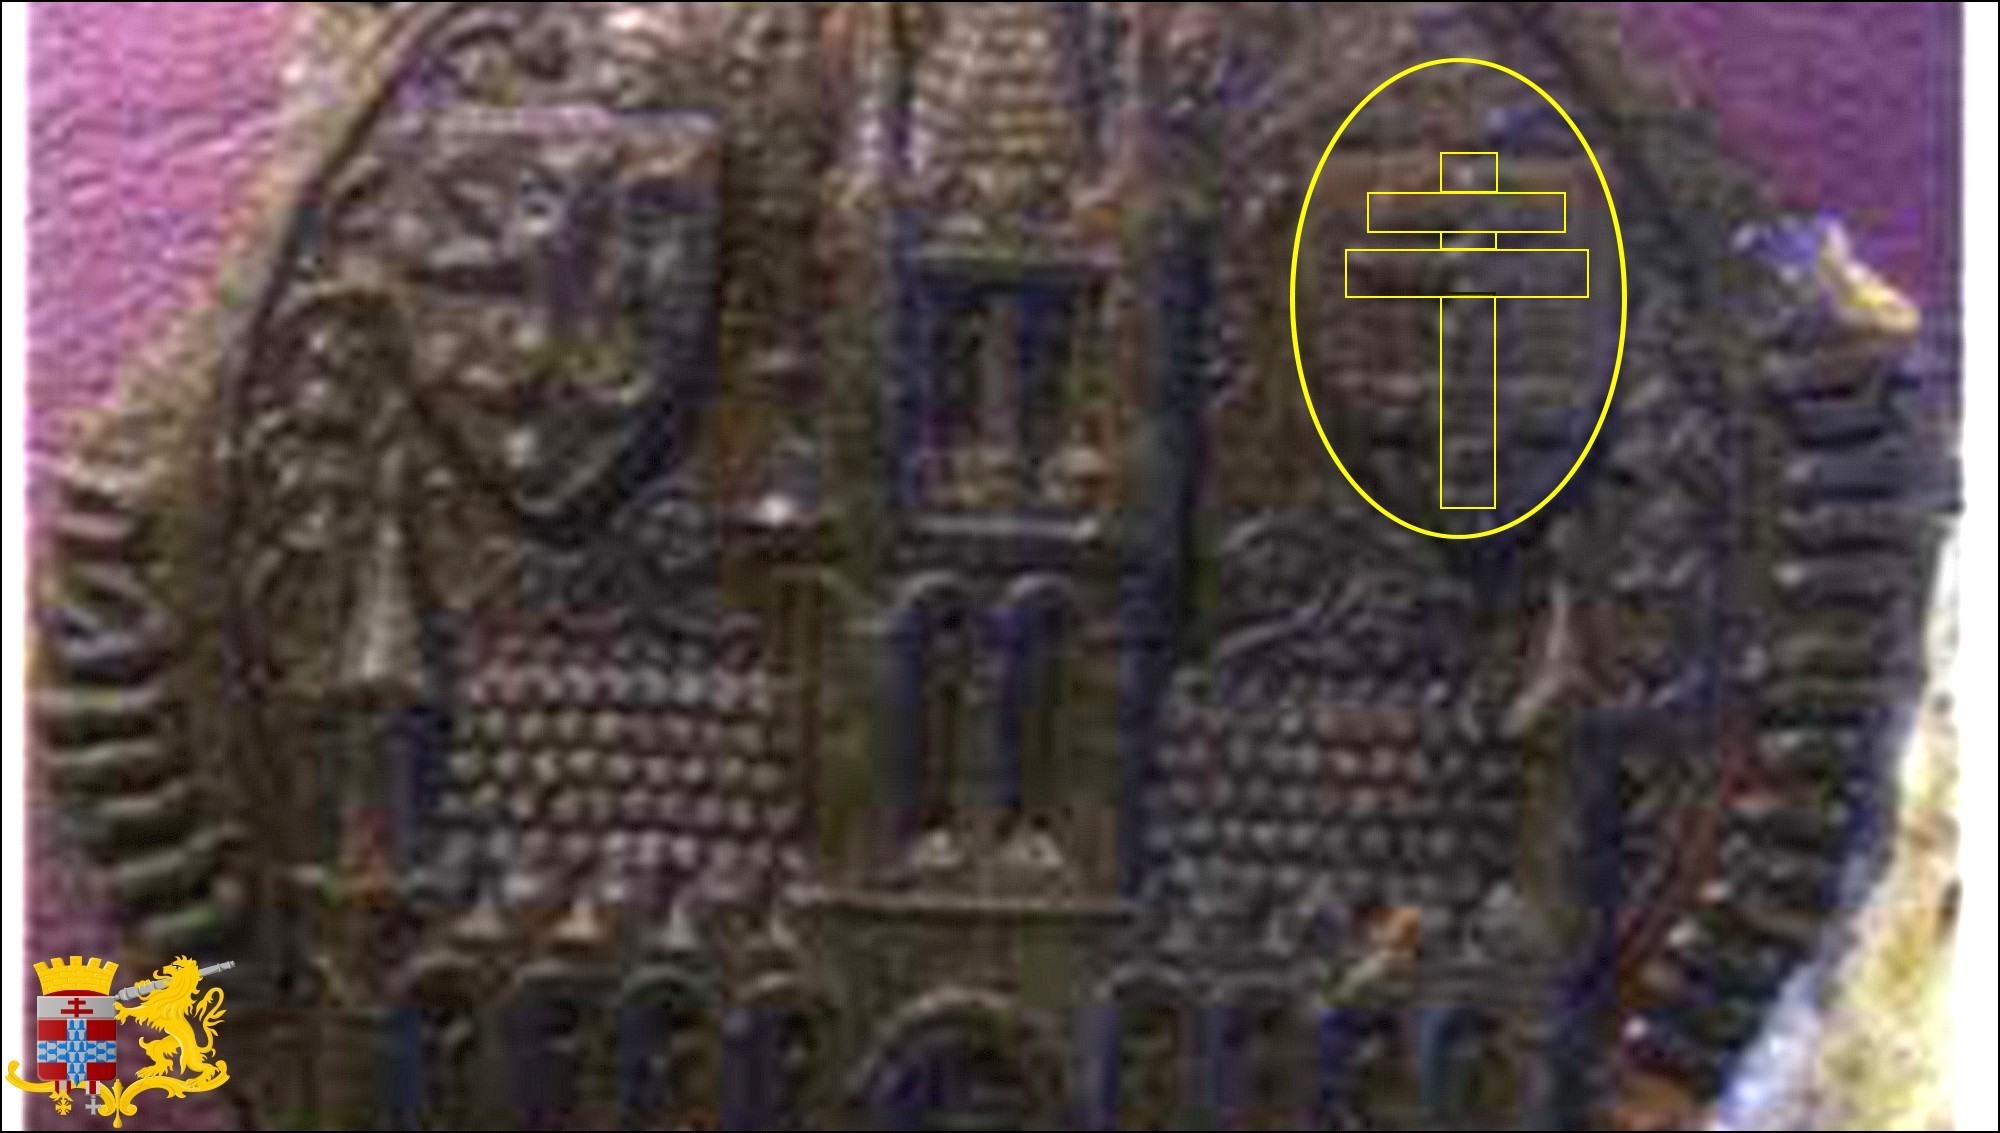 Sceau aux causes de la ville d'Ypres datant de l'an 1372. Vous pouvez voir la croix à double traverse posée sur la rivière qui traverse la ville sur le blason en haut à droite de la photo.